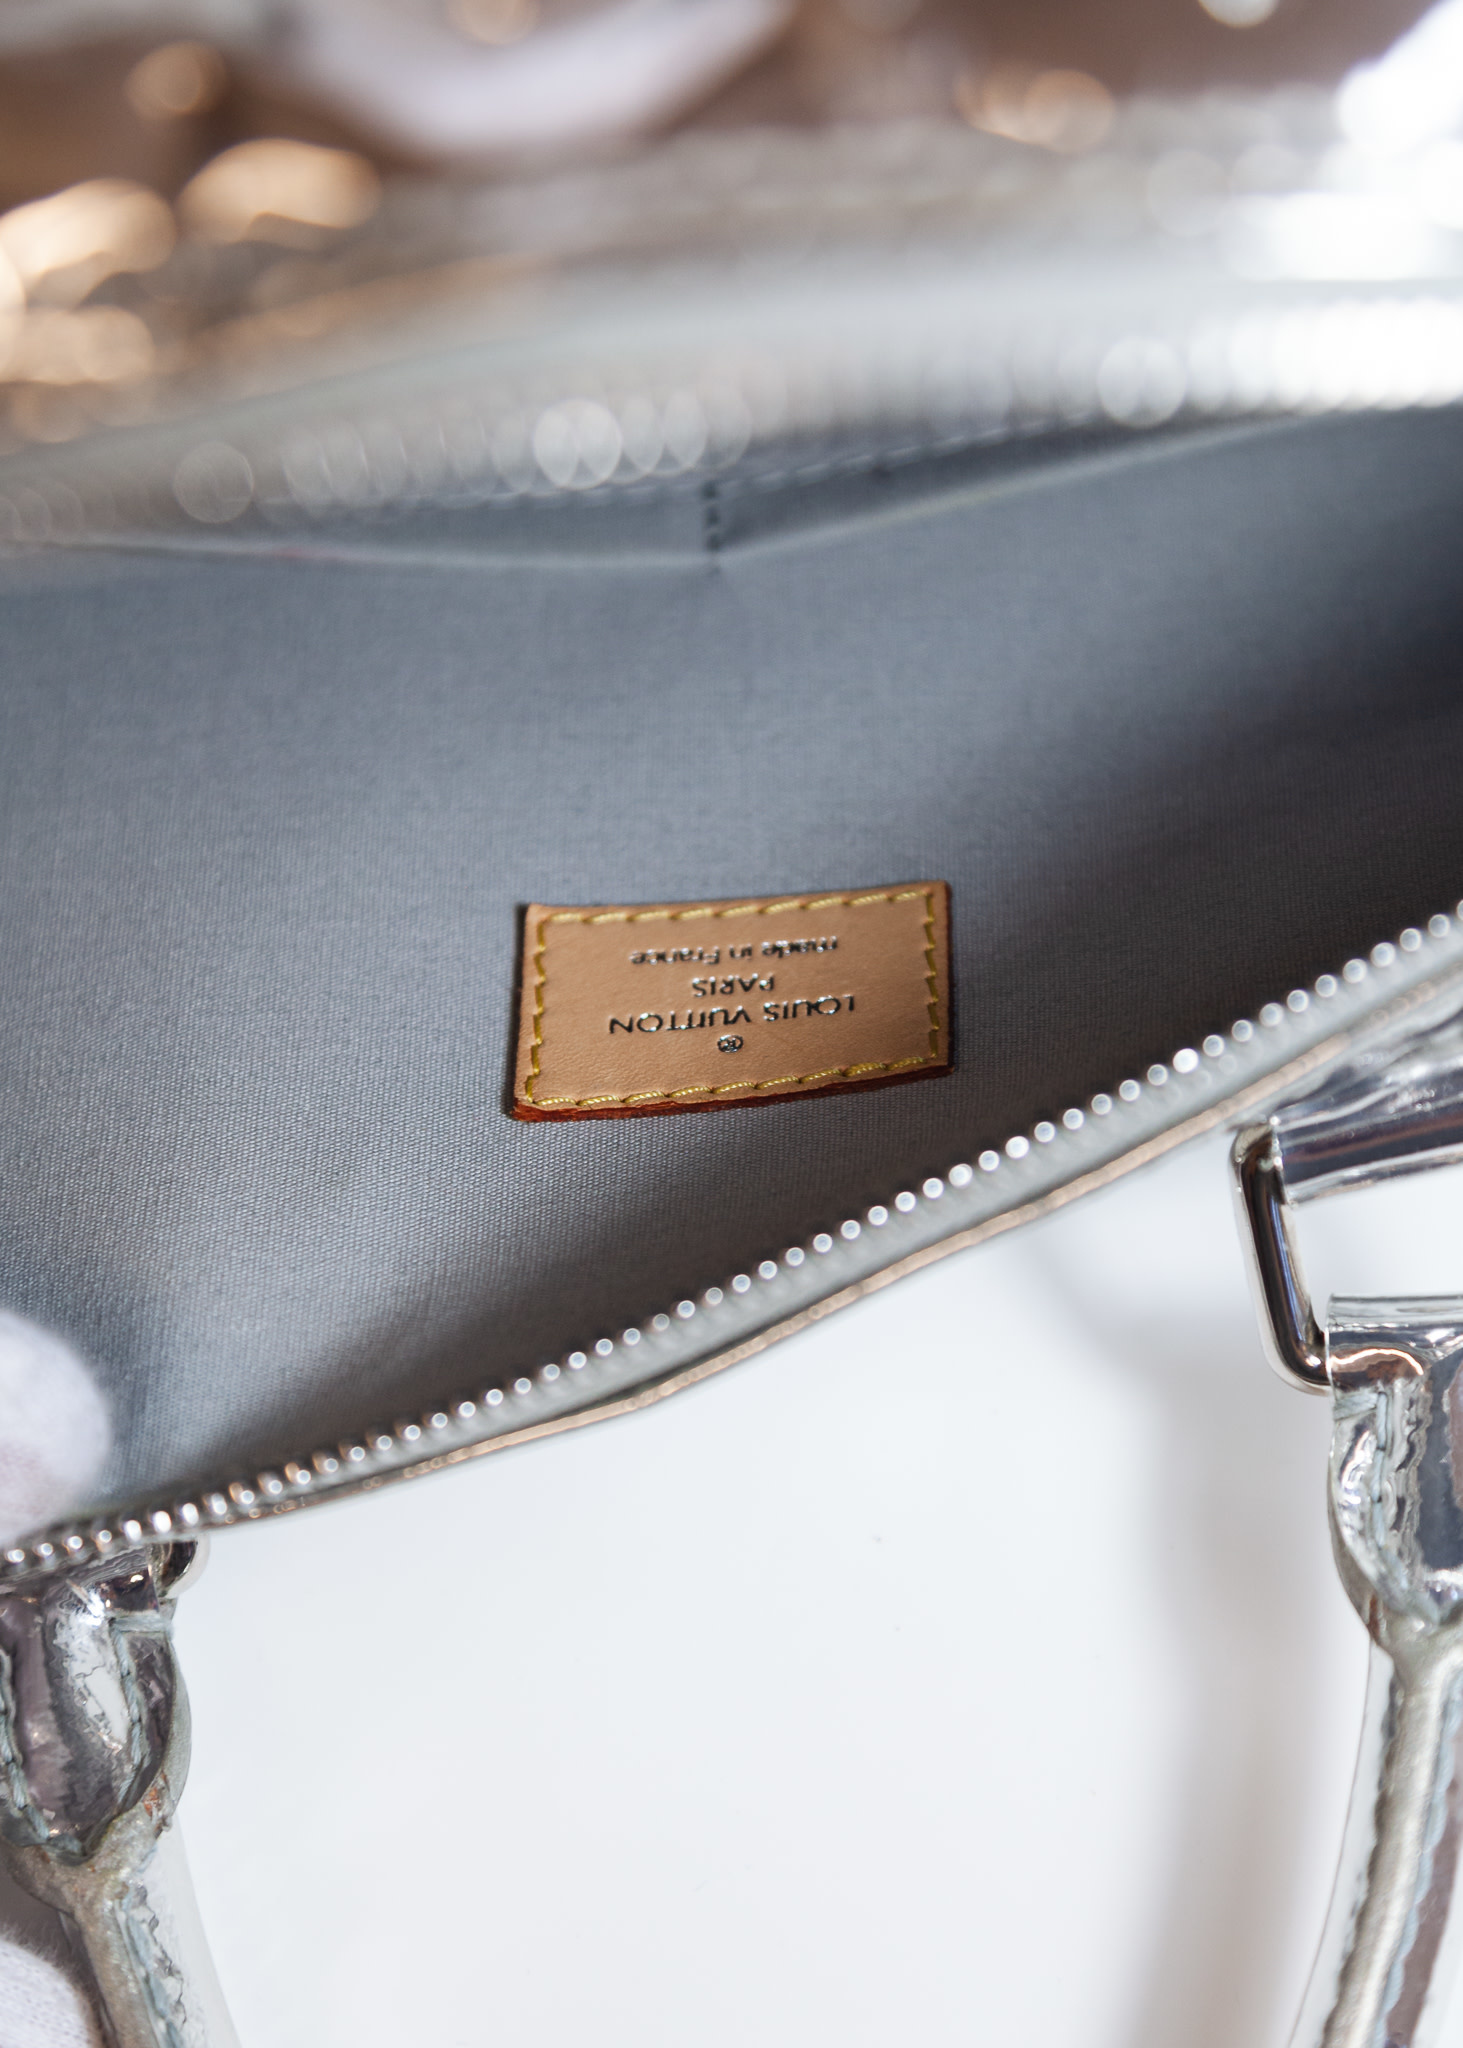 Louis Vuitton Silver Miroir Speedy 35